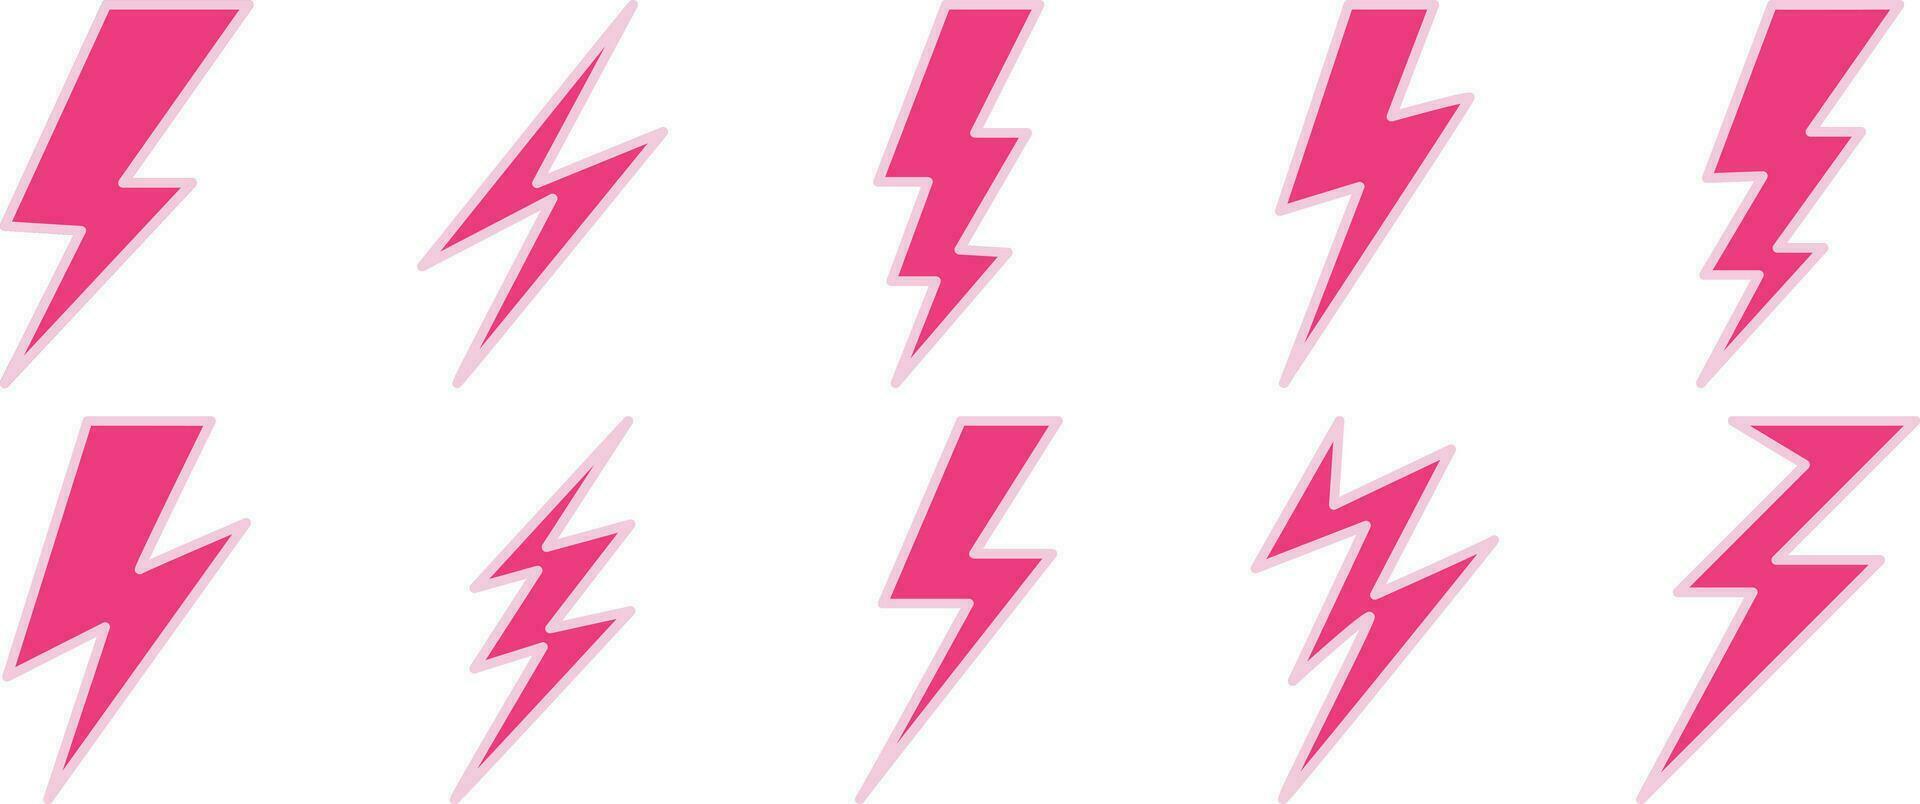 reeks van bliksem bout, elektriciteit, en storm pictogrammen in roze Aan een wit achtergrond. vector illustratie.